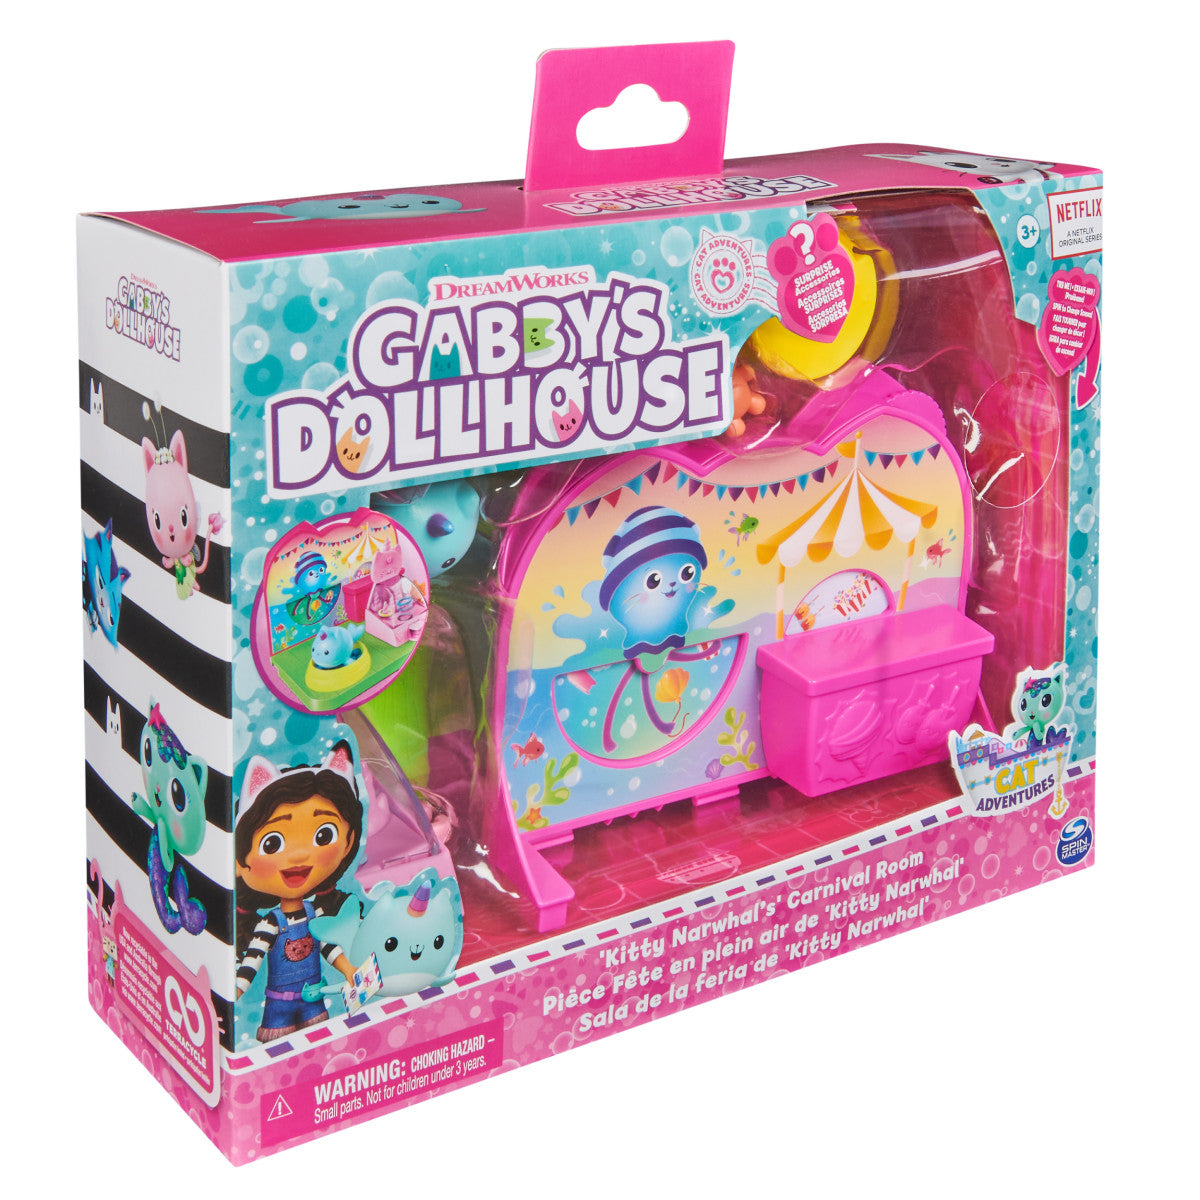 Gabbys Dollhouse: Sala De La Feria De Kitty Narwhal